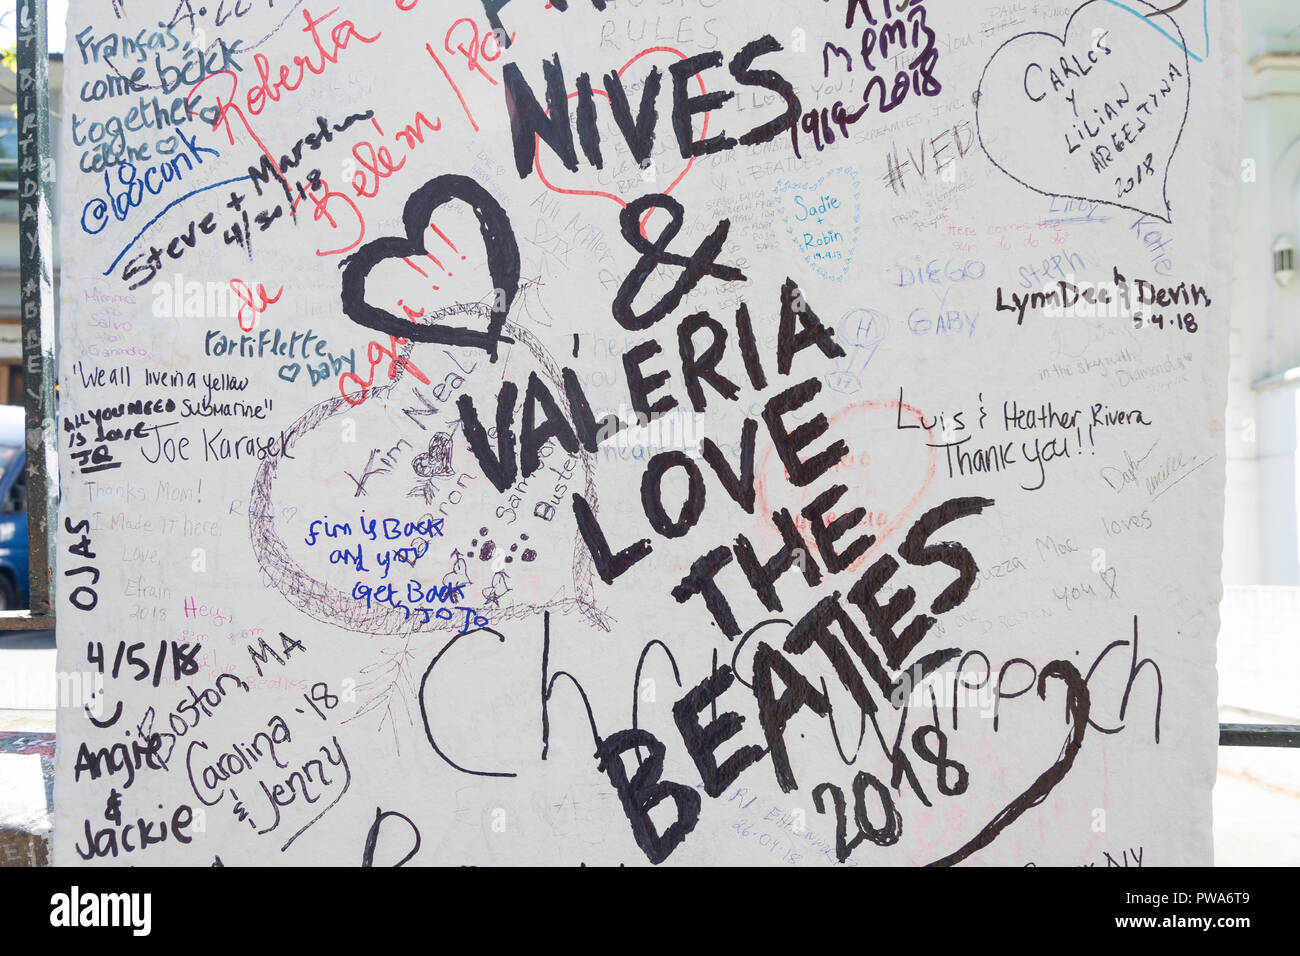 Les Beatles fan des graffitis sur colonne, Abbey Road, St John's Wood, City of westminster, Greater London, Angleterre, Royaume-Uni Banque D'Images